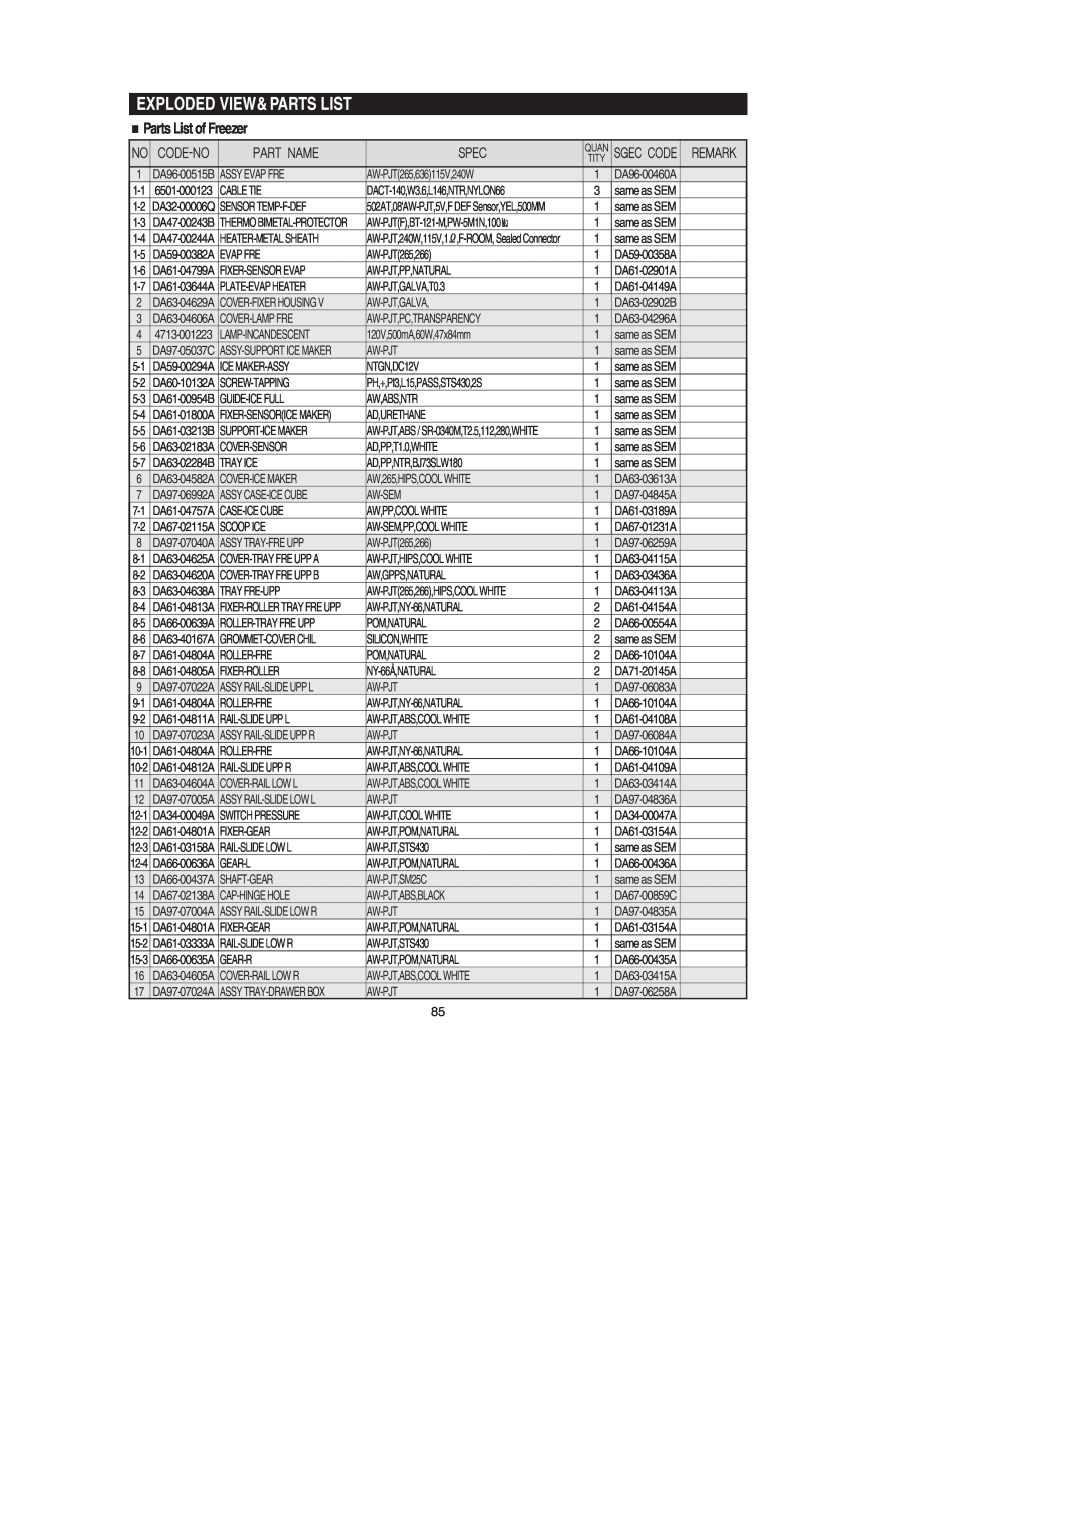 Samsung RF267AERS, RF267AEBP, RF267AE**, RF26XAERS, RF26XAEPN, RF26XAE** Exploded View&Parts List, Parts List of Freezer 